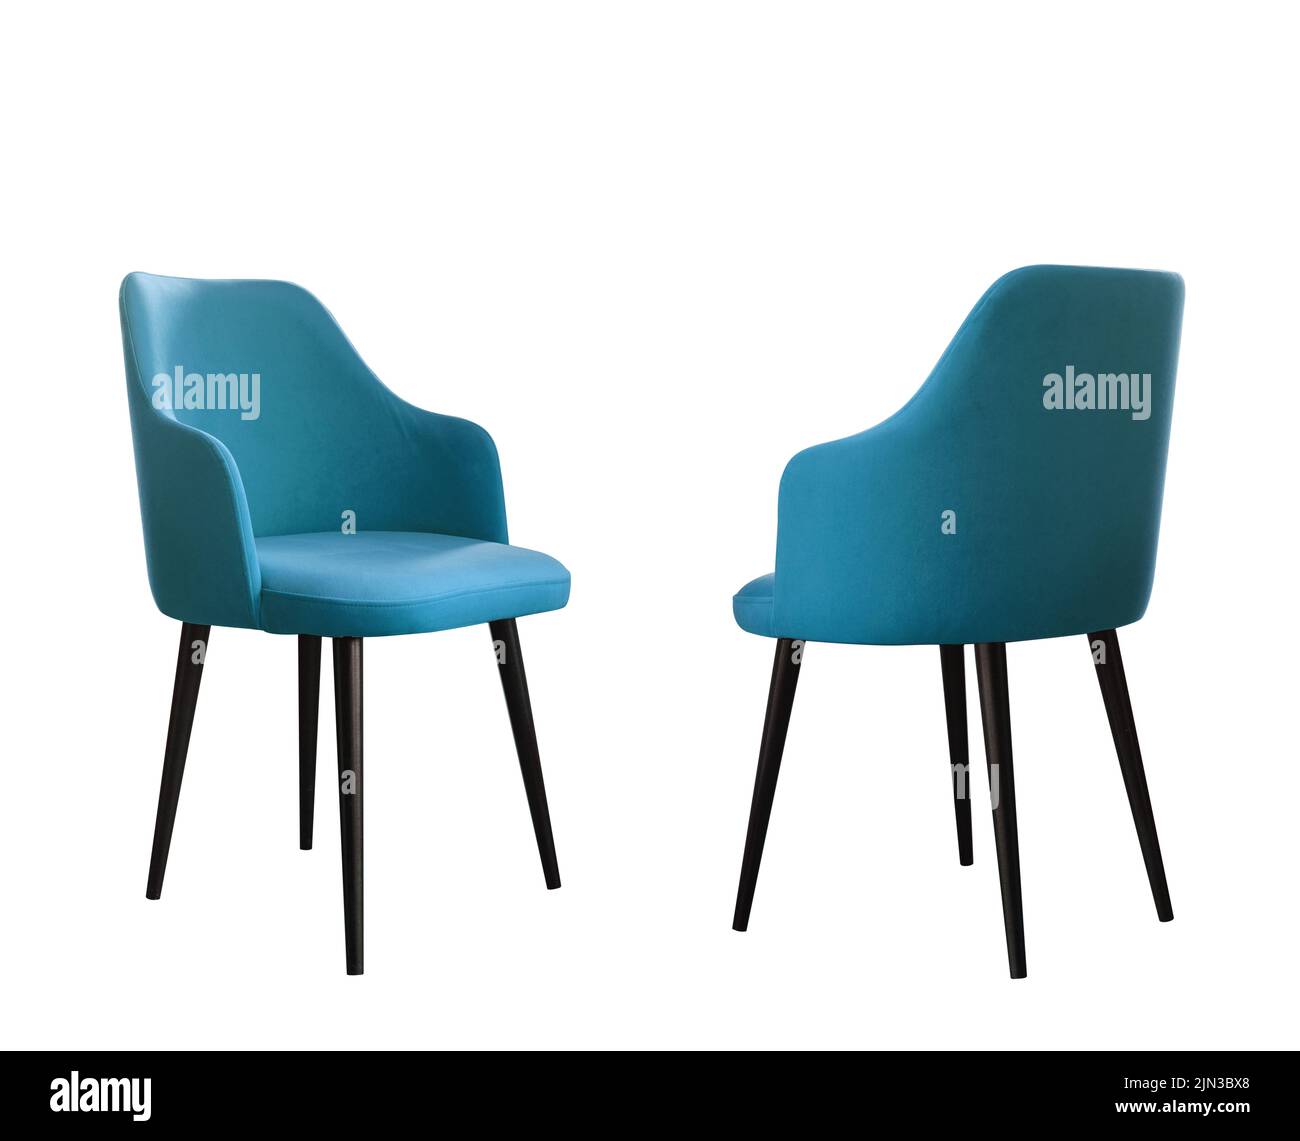 Vue avant et arrière d'une chaise à manger moderne bleue avec pattes noires isolées sur fond blanc avec espace de copie Banque D'Images